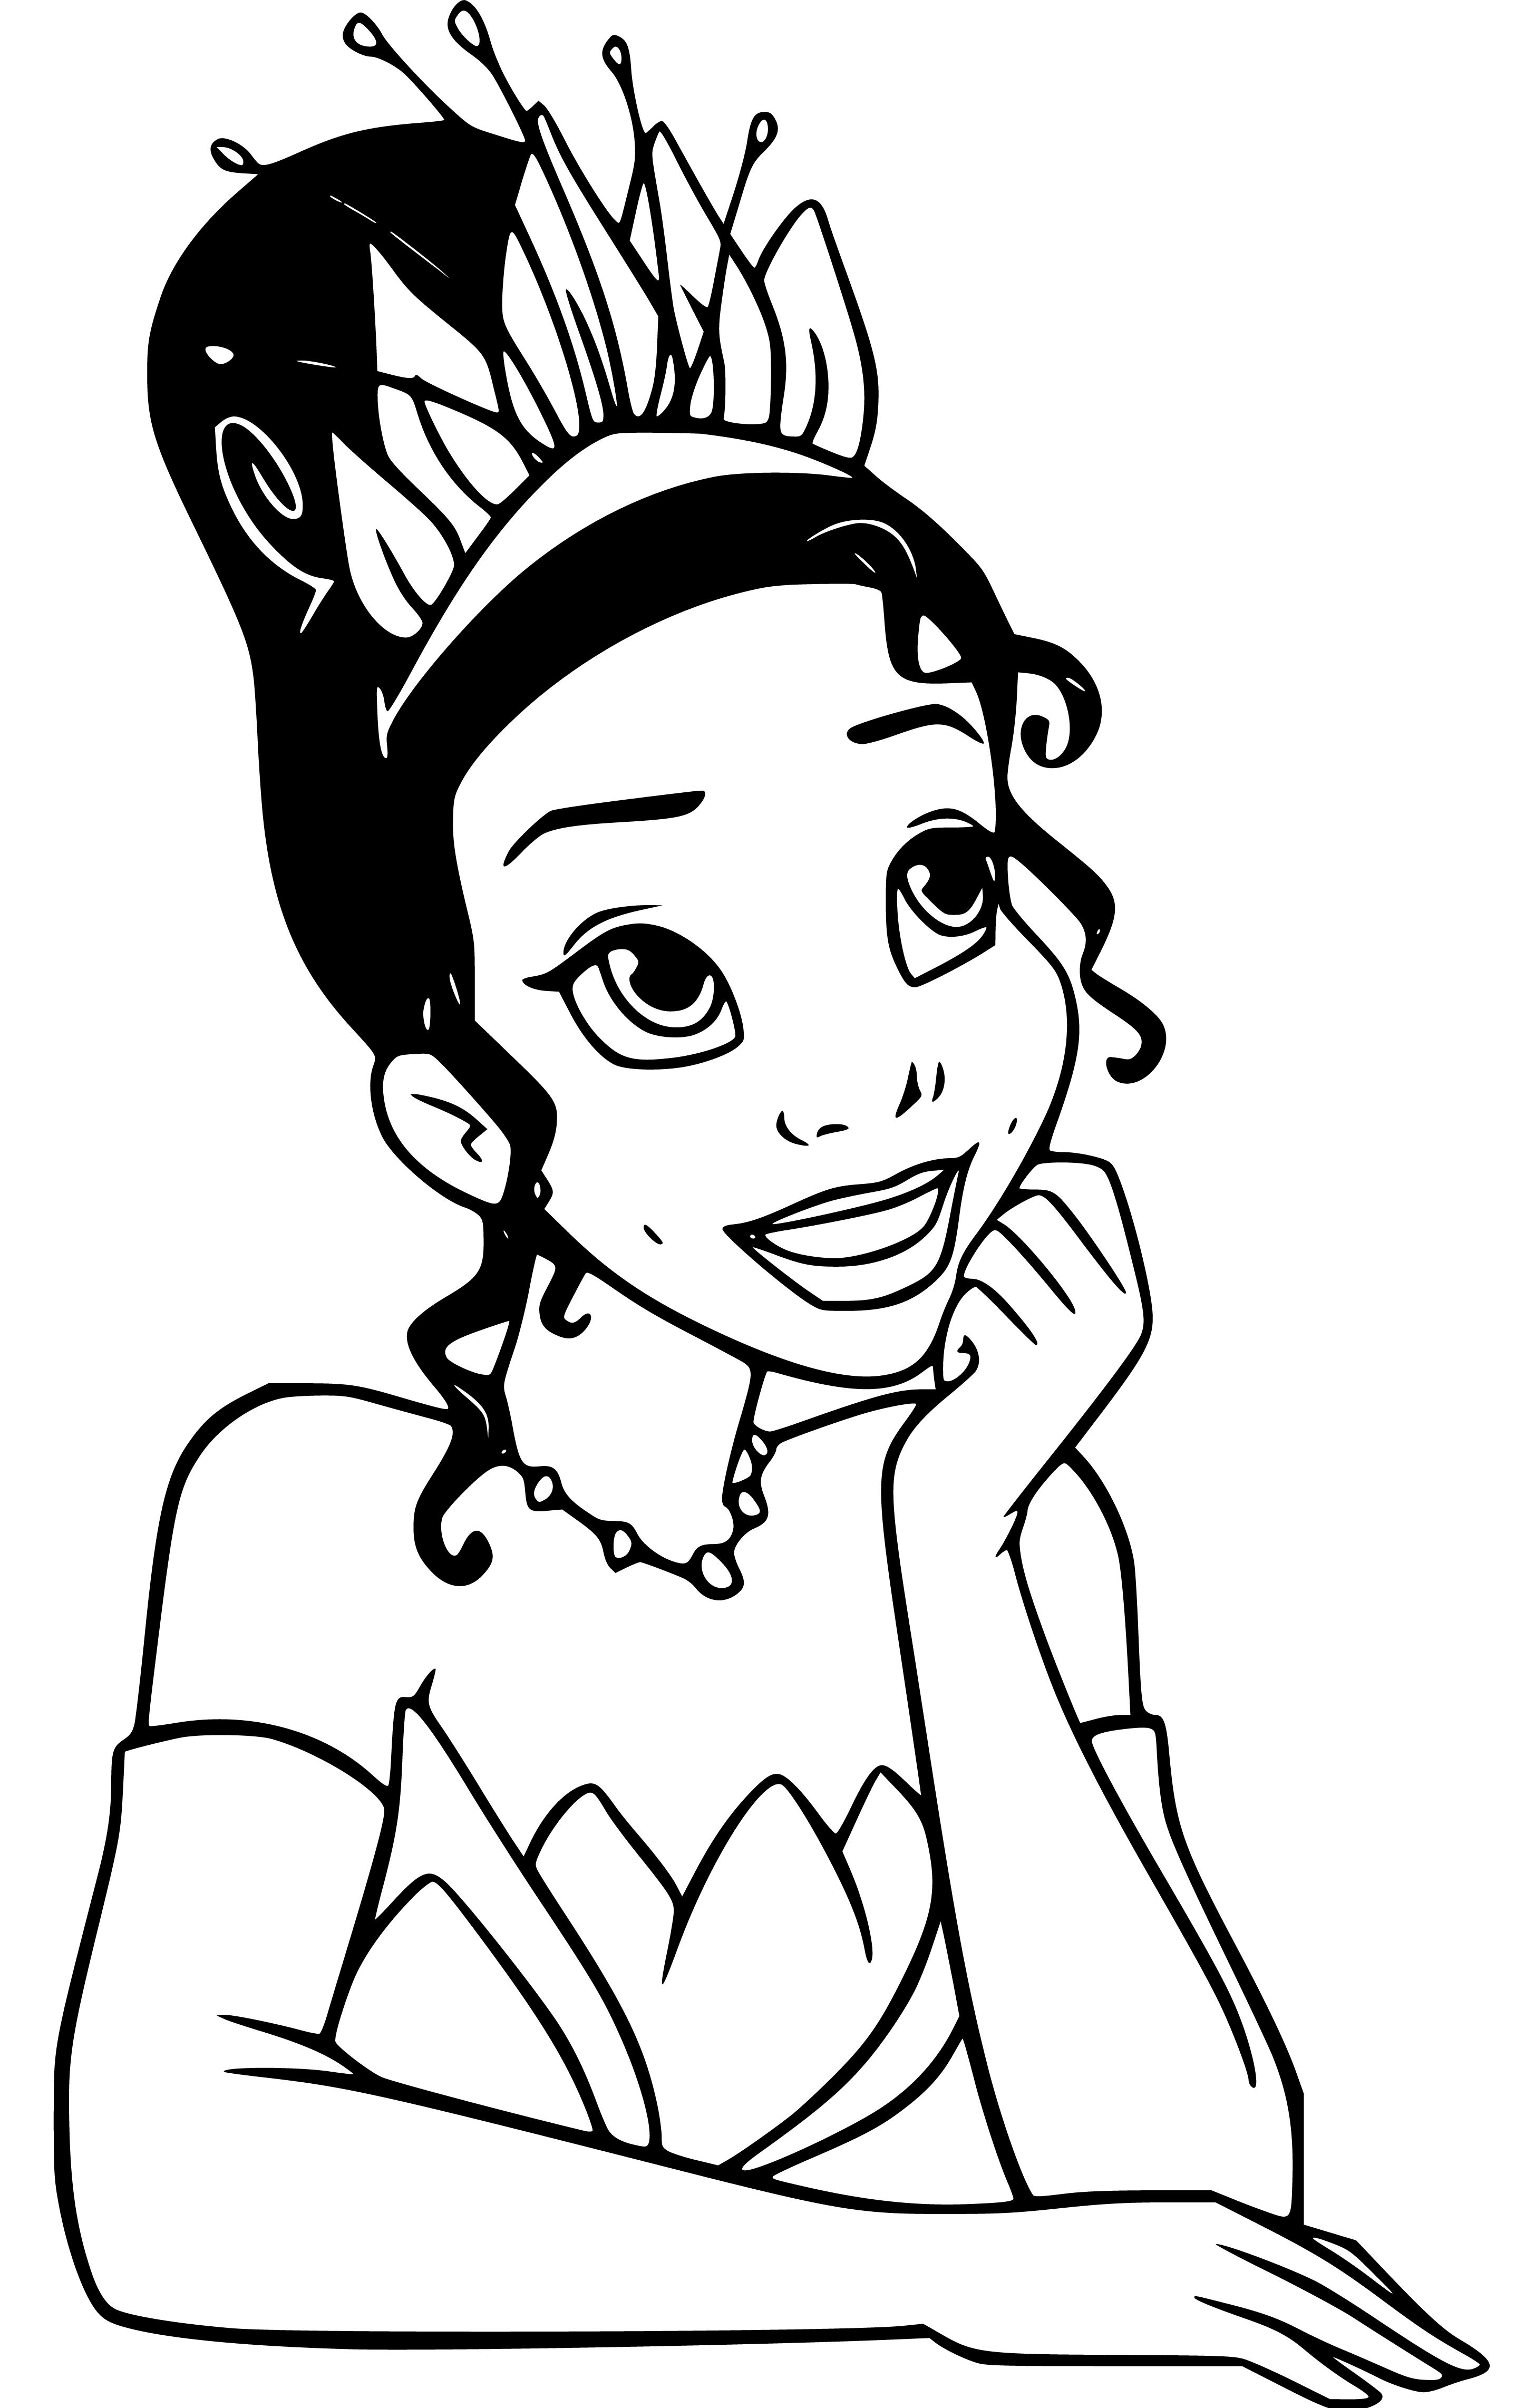 Princess Tiana sketching to color - SheetalColor.com